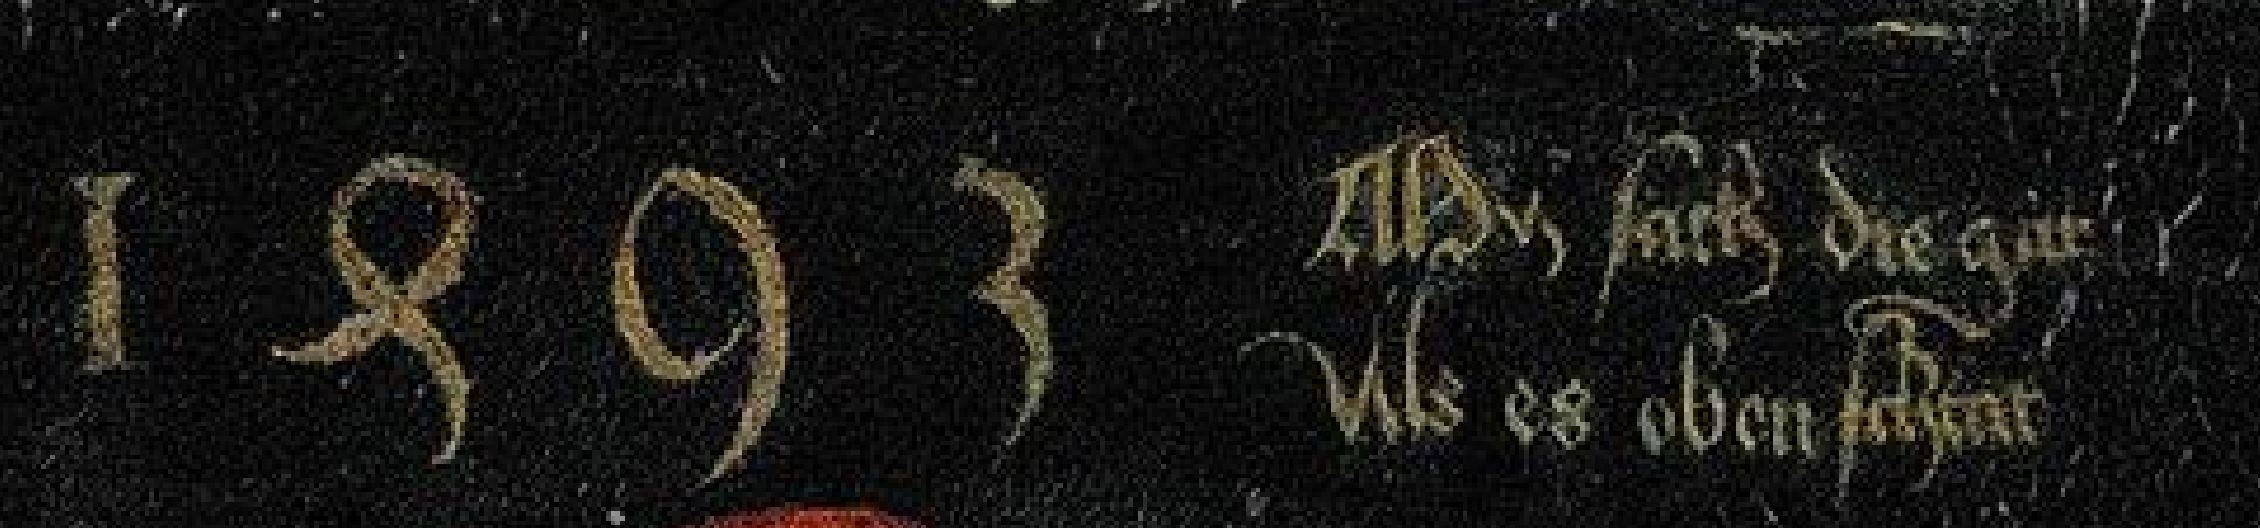 Durer autoportait 1493 Louvre detail motto